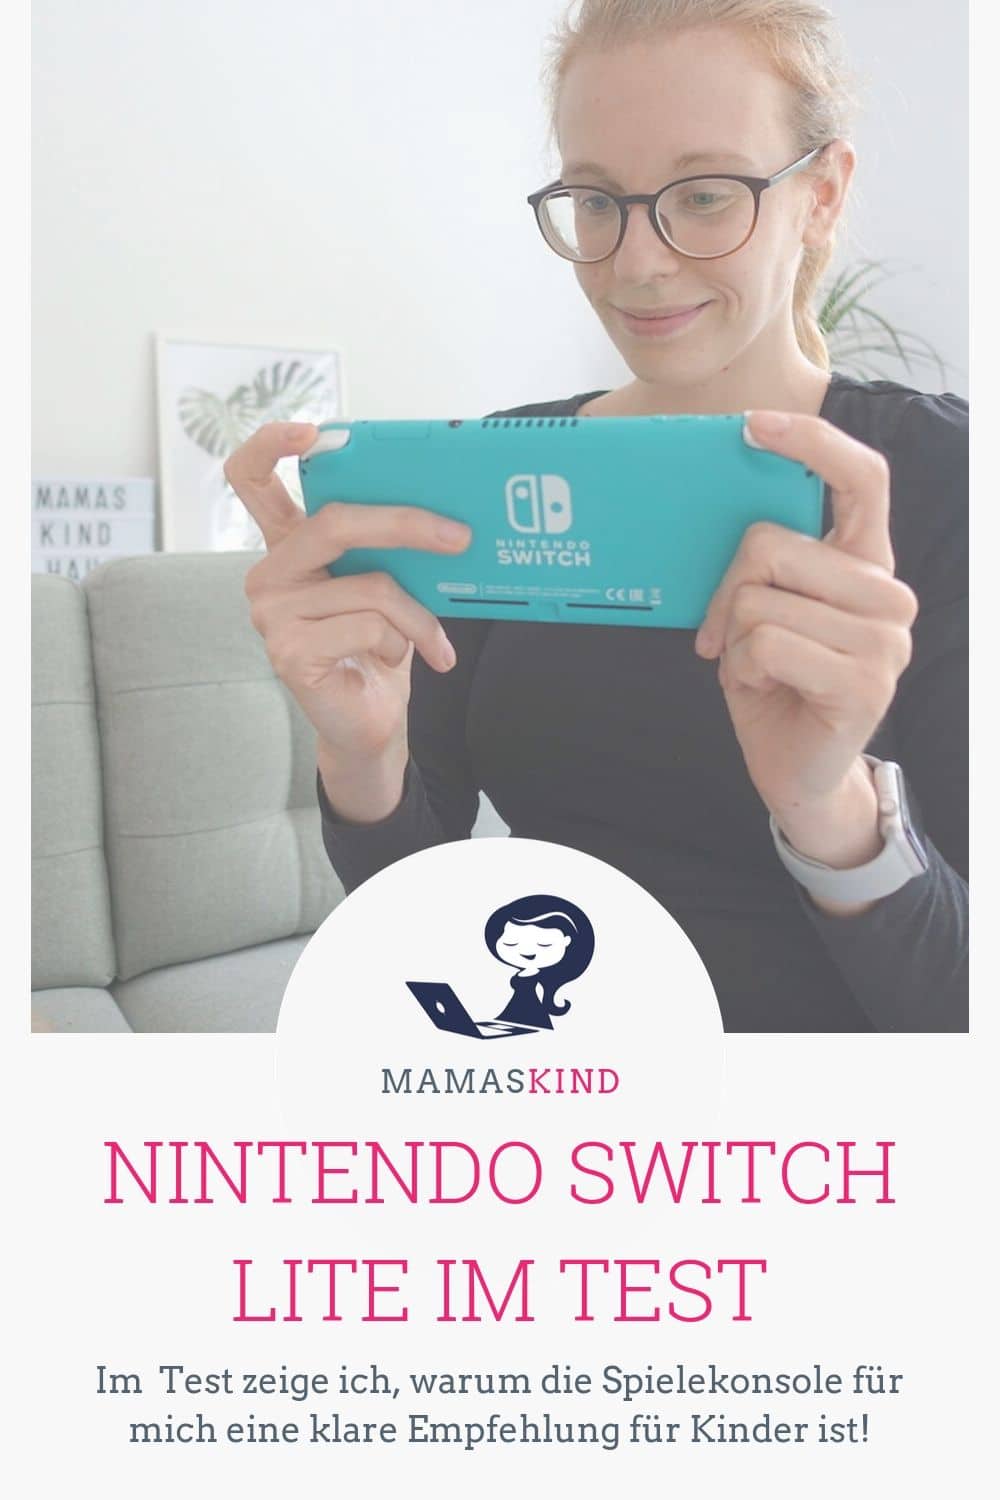 Nintendo Switch Lite im Test - warum die Konsole ein Muss für zockende Kinder ist. - Mehr Infos auf Mamaskind.de